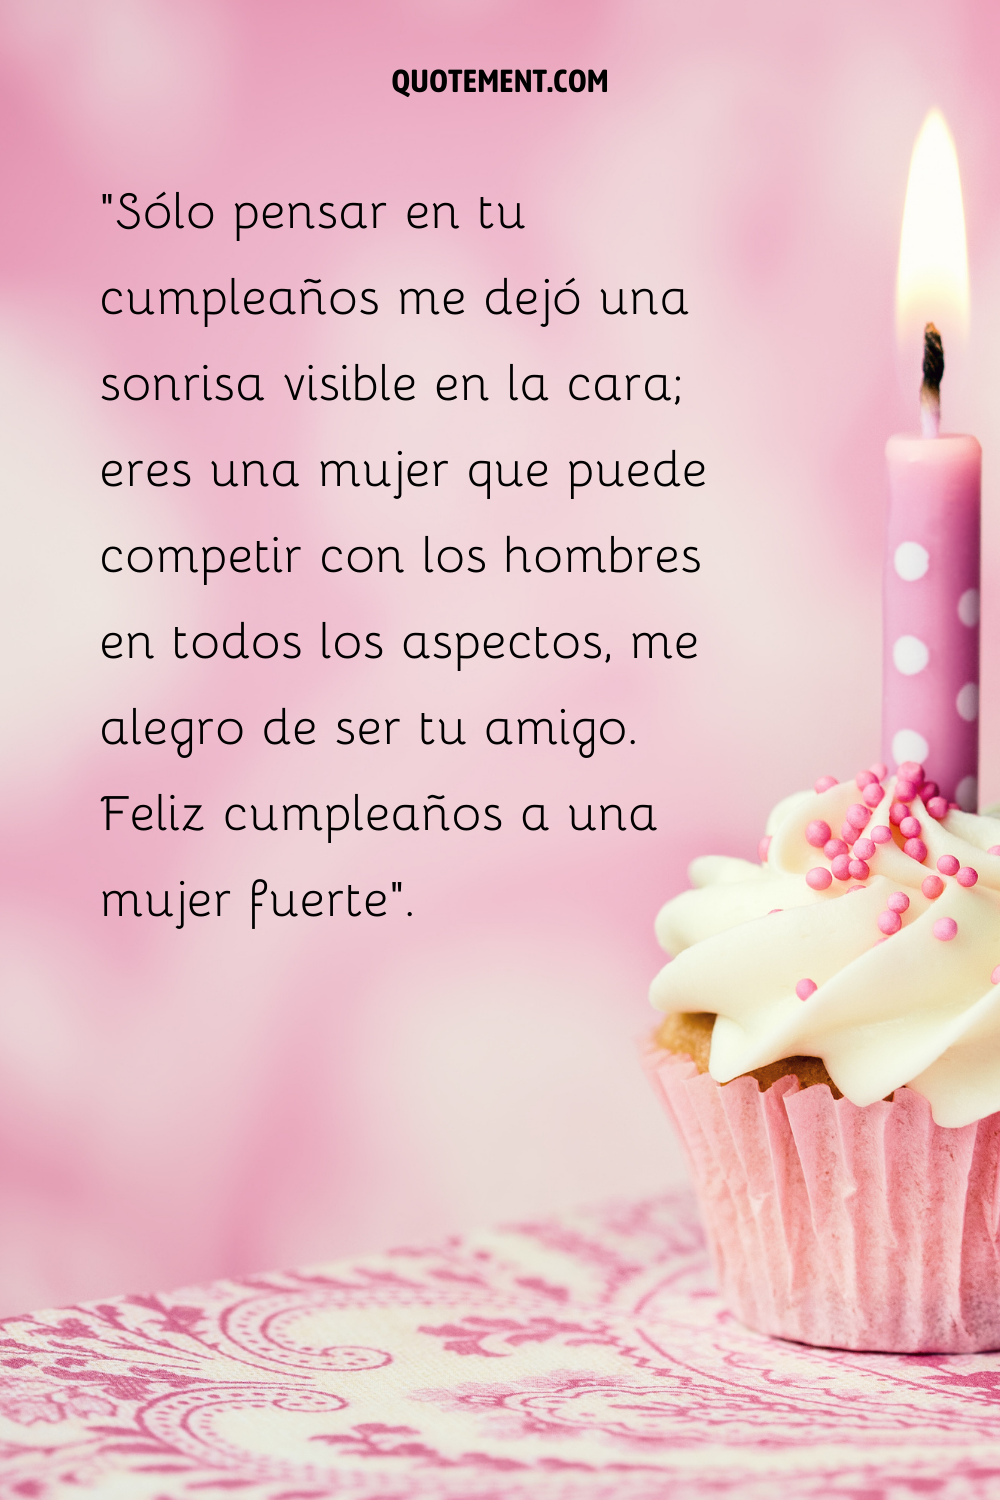 Cupcake de cumpleaños rosa y blanco con una vela encendida